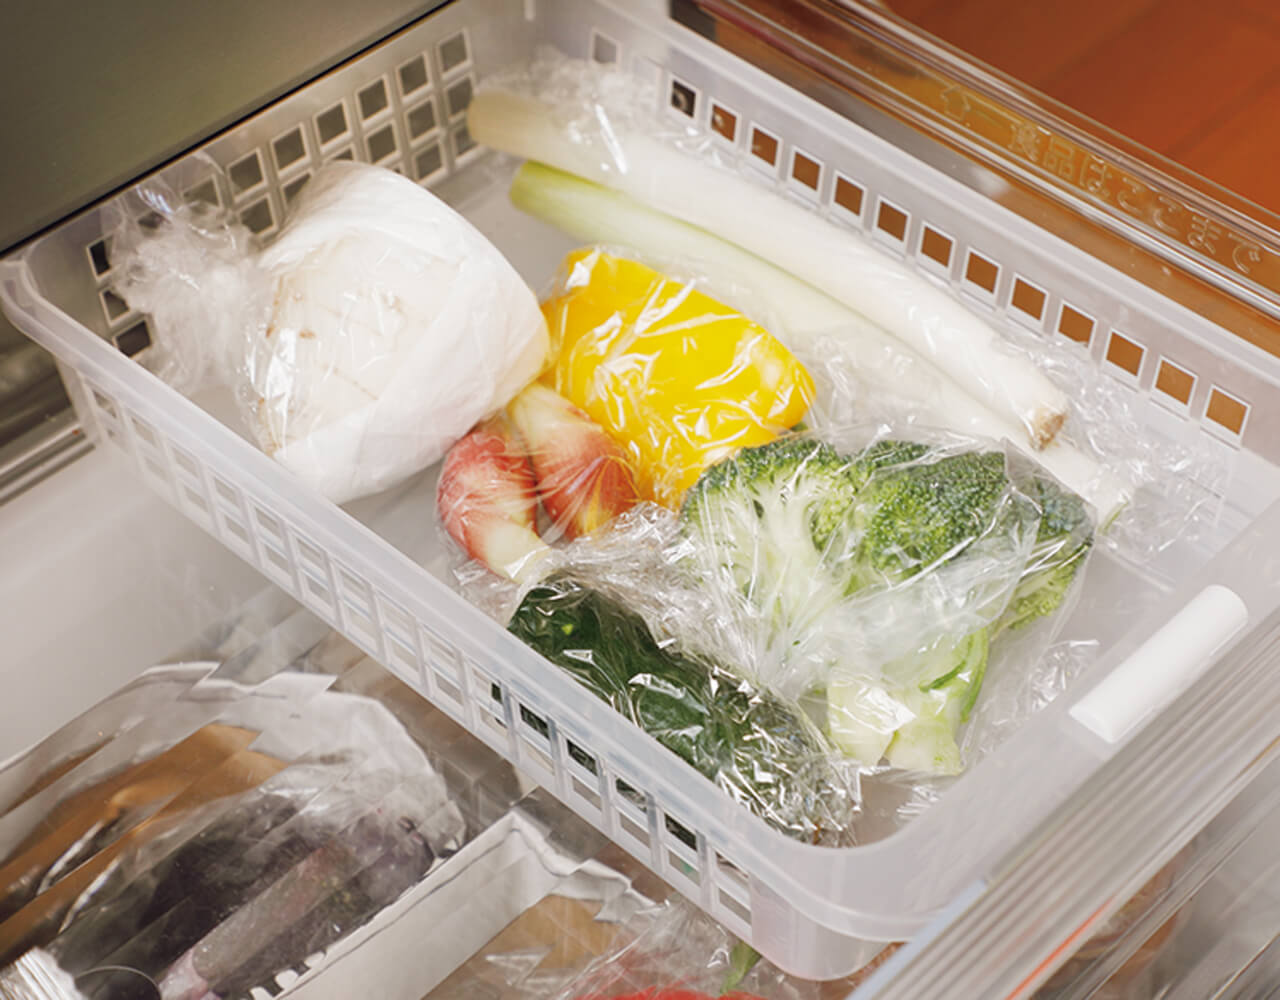 使いかけの野菜は迷子になりやすい食品の代表。透明のケースなどに入れ1カ所にまとめておくのが正解。上段の端など、パッと目に入りやすい場所にケースを置き、この中のものから優先的に使って。